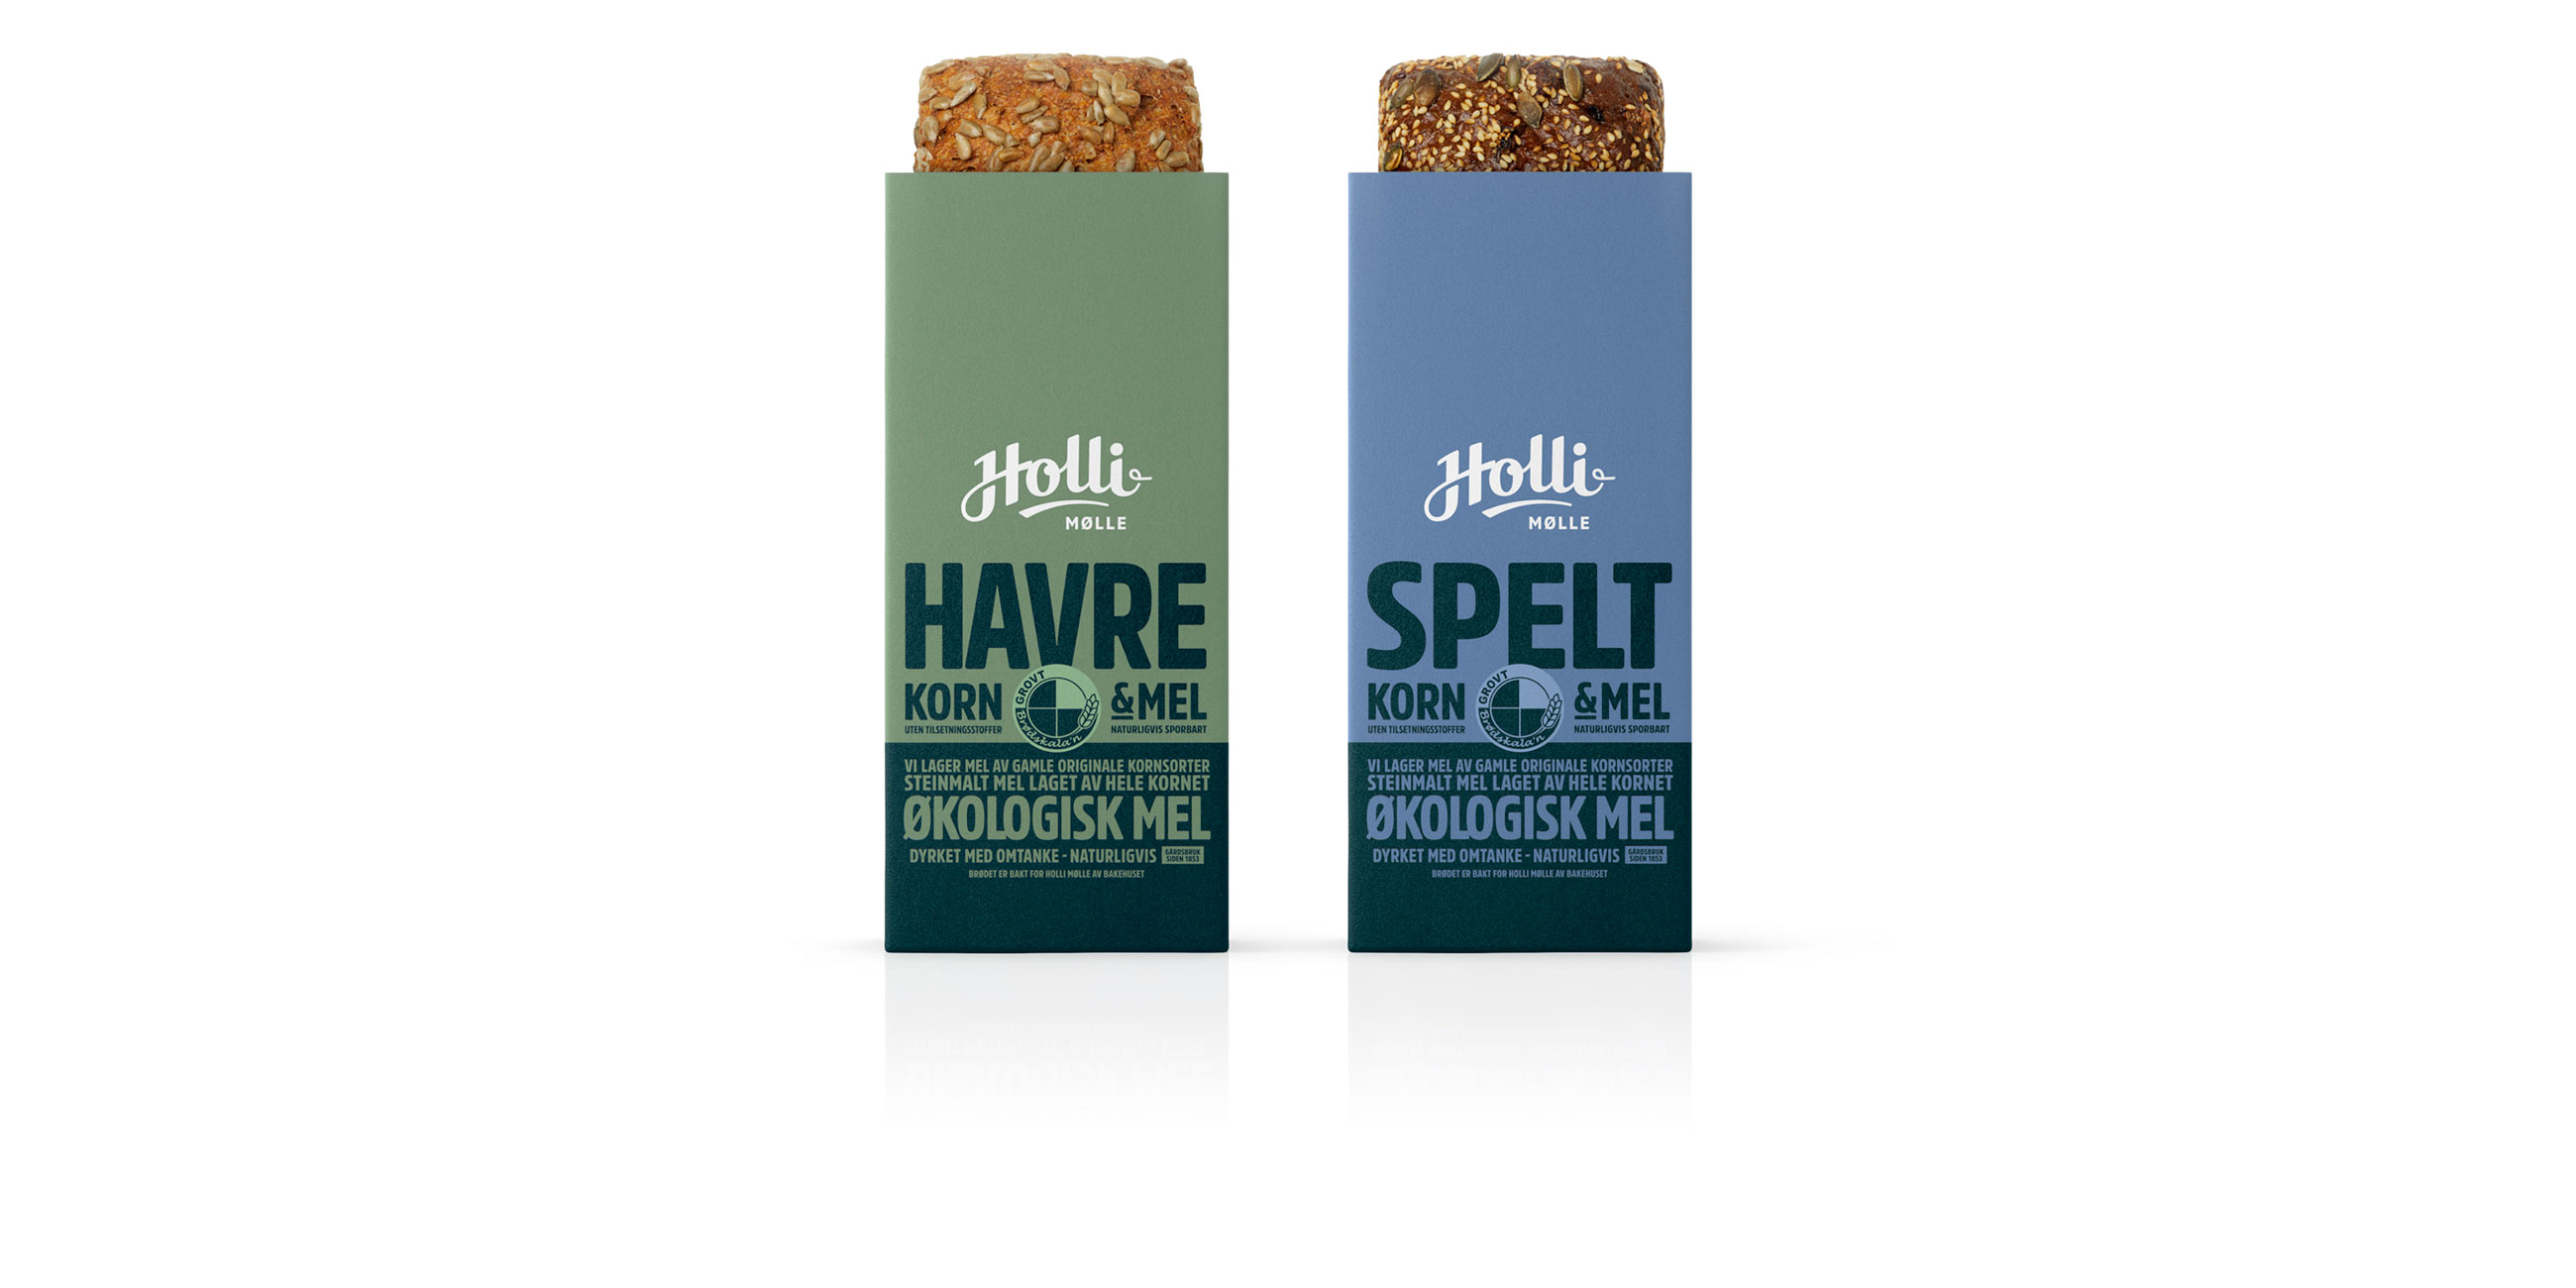 Holli Mølle Havre og spelt. Emballasje packaging design.